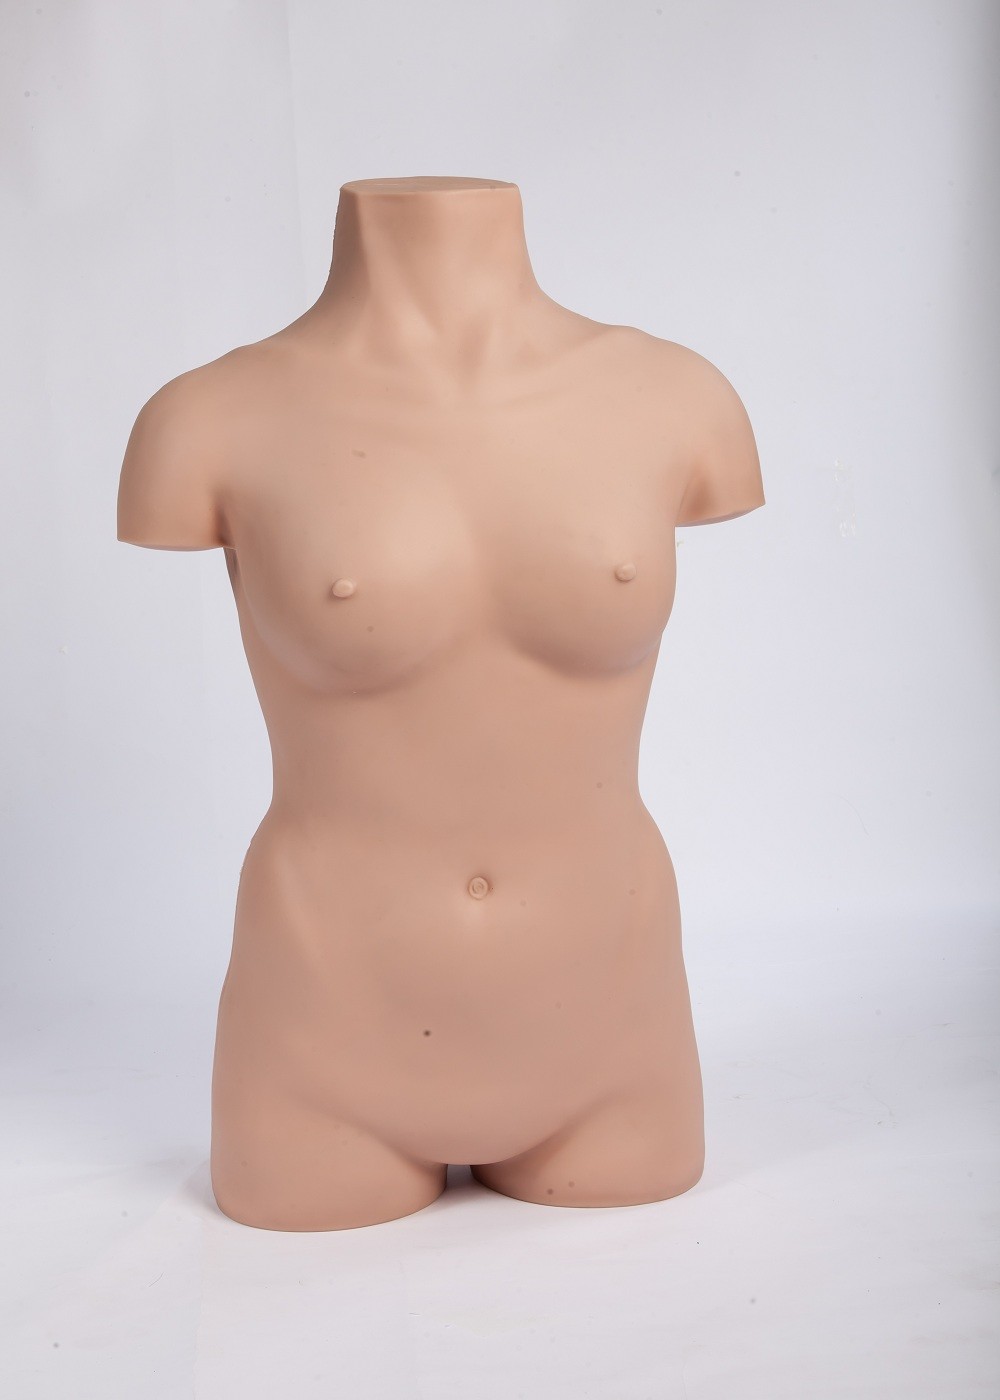 Ρεαλιστικά θηλυκά σωμάτων αποστηρωμένα πρότυπα κατάρτισης λειτουργίας χειρουργικά για την εκπαίδευση